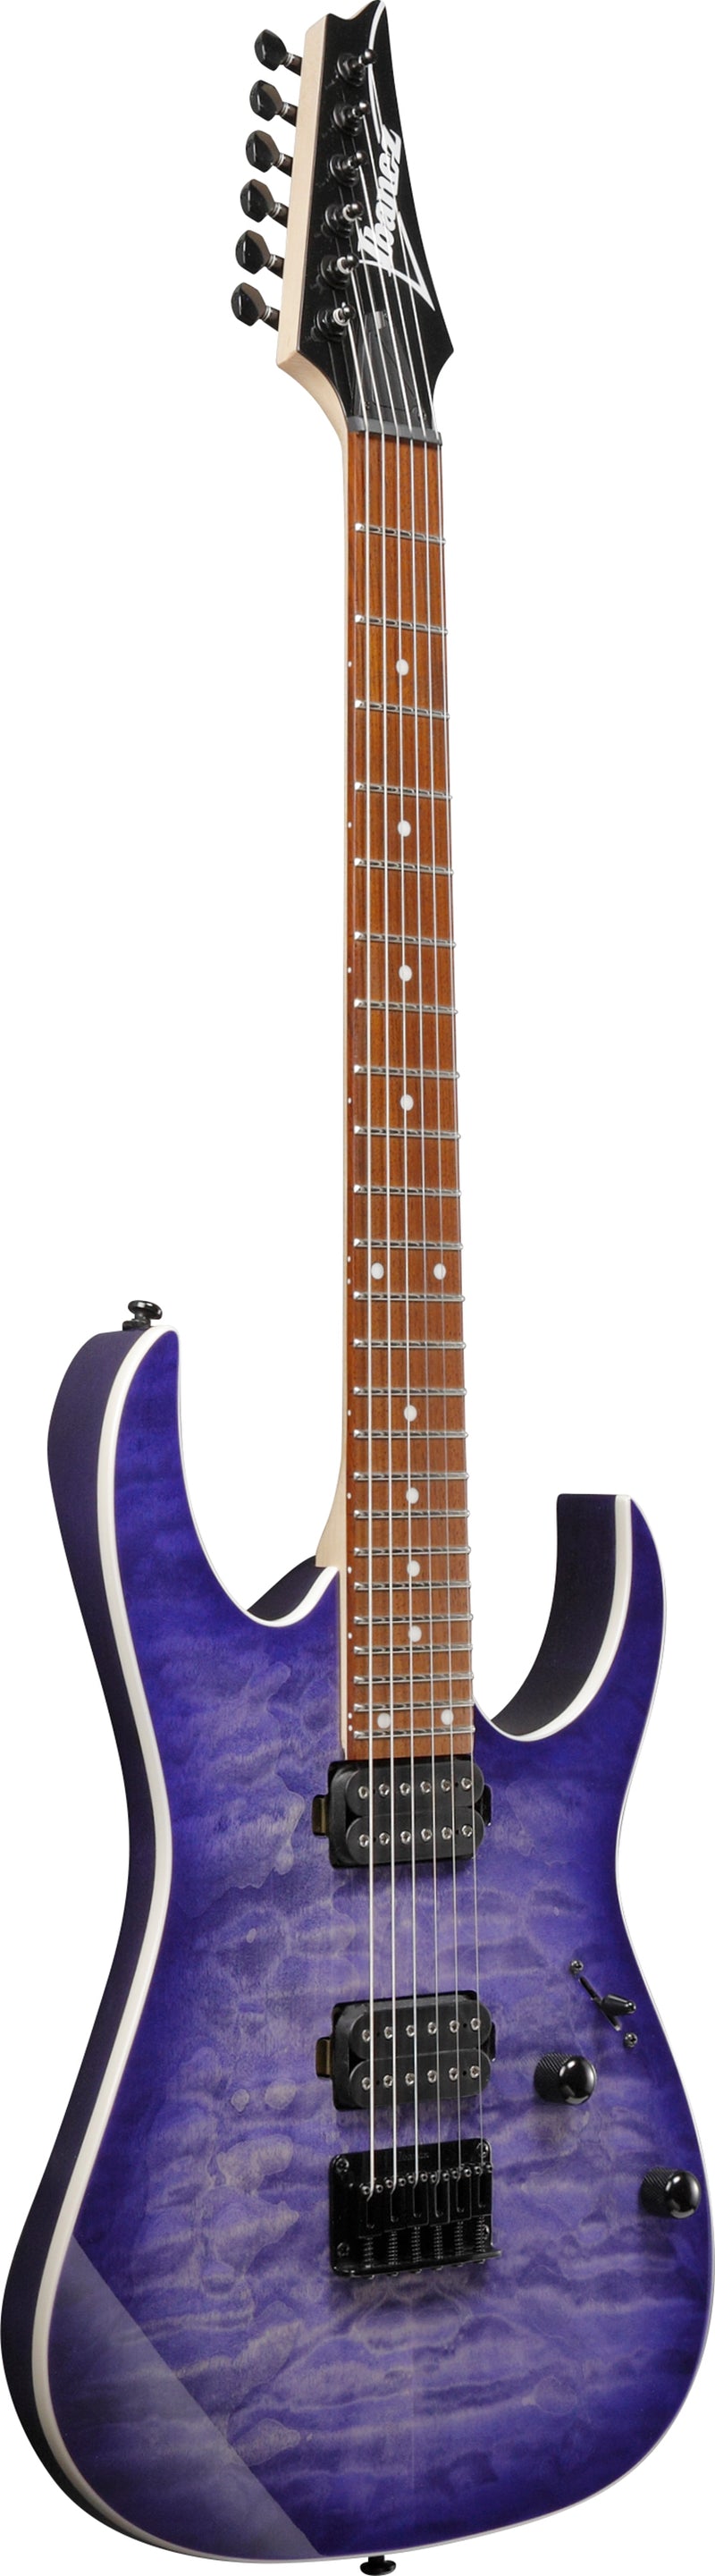 Ibanez RG Standard Electric Guitar (Cerulean Blue Burst)